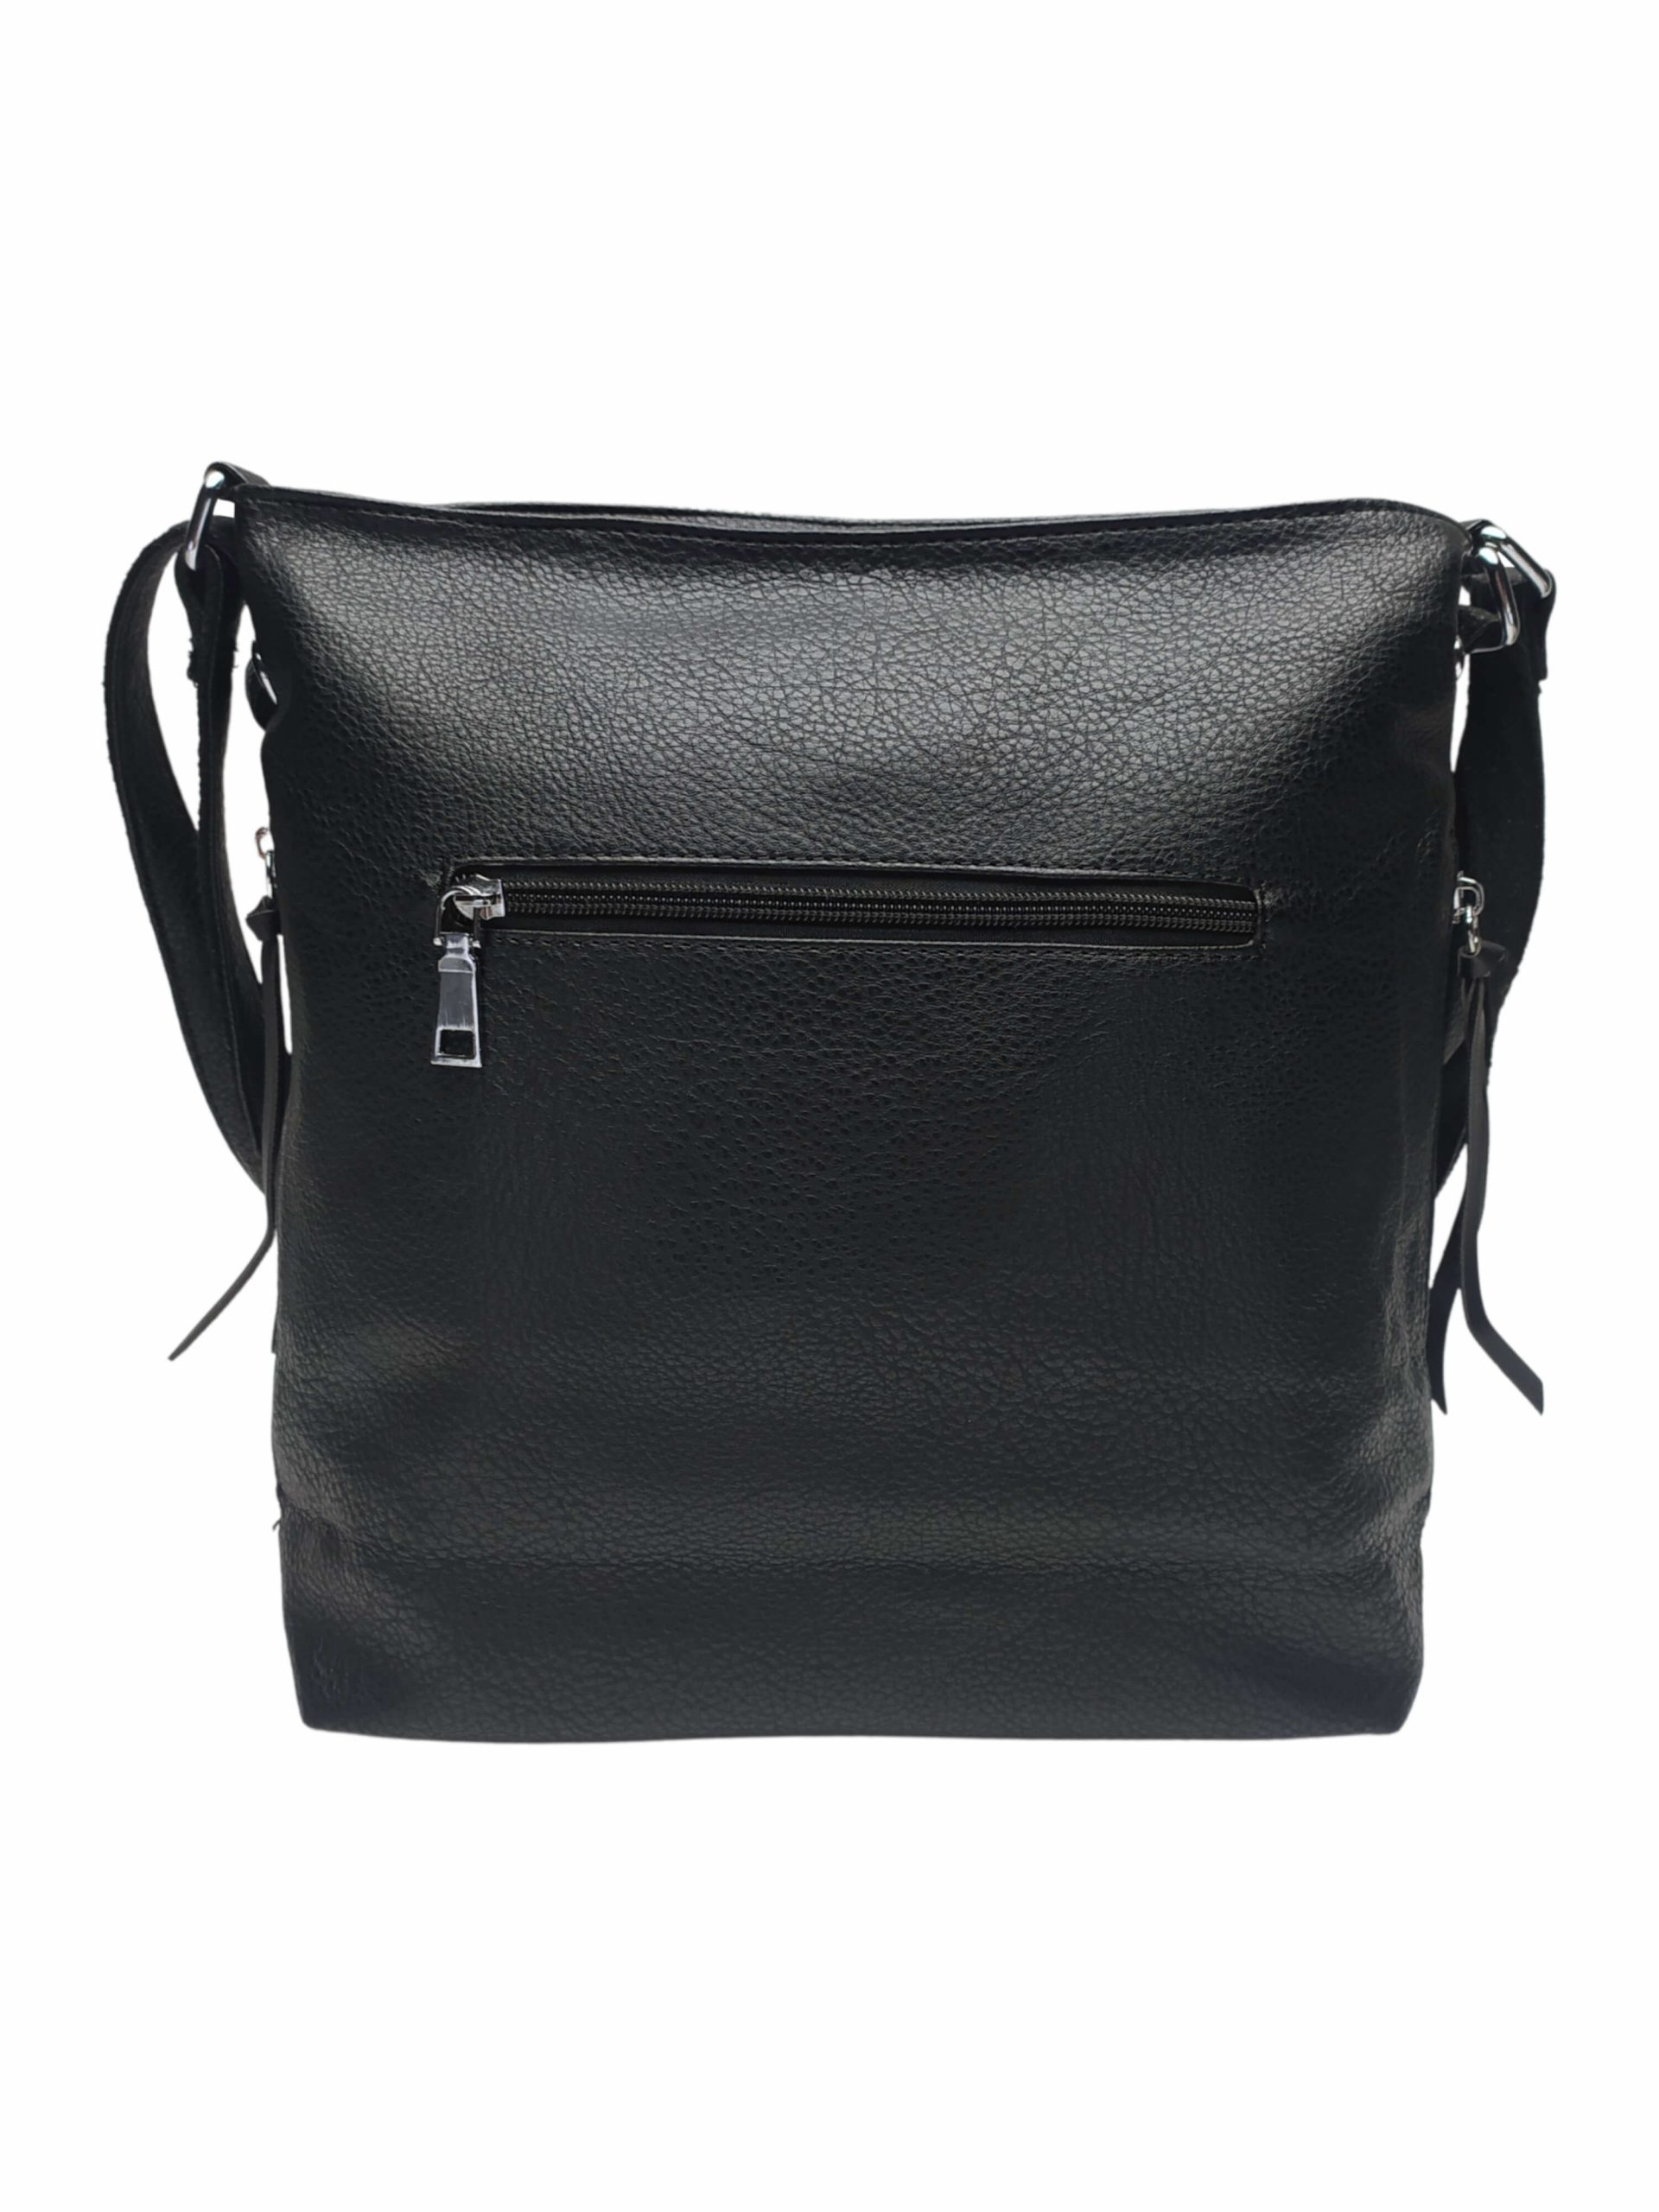 Střední černý kabelko-batoh 2v1 s praktickými bočními kapsami, Miss Moda, 980882, zadní strana kabelko-batohu 2v1